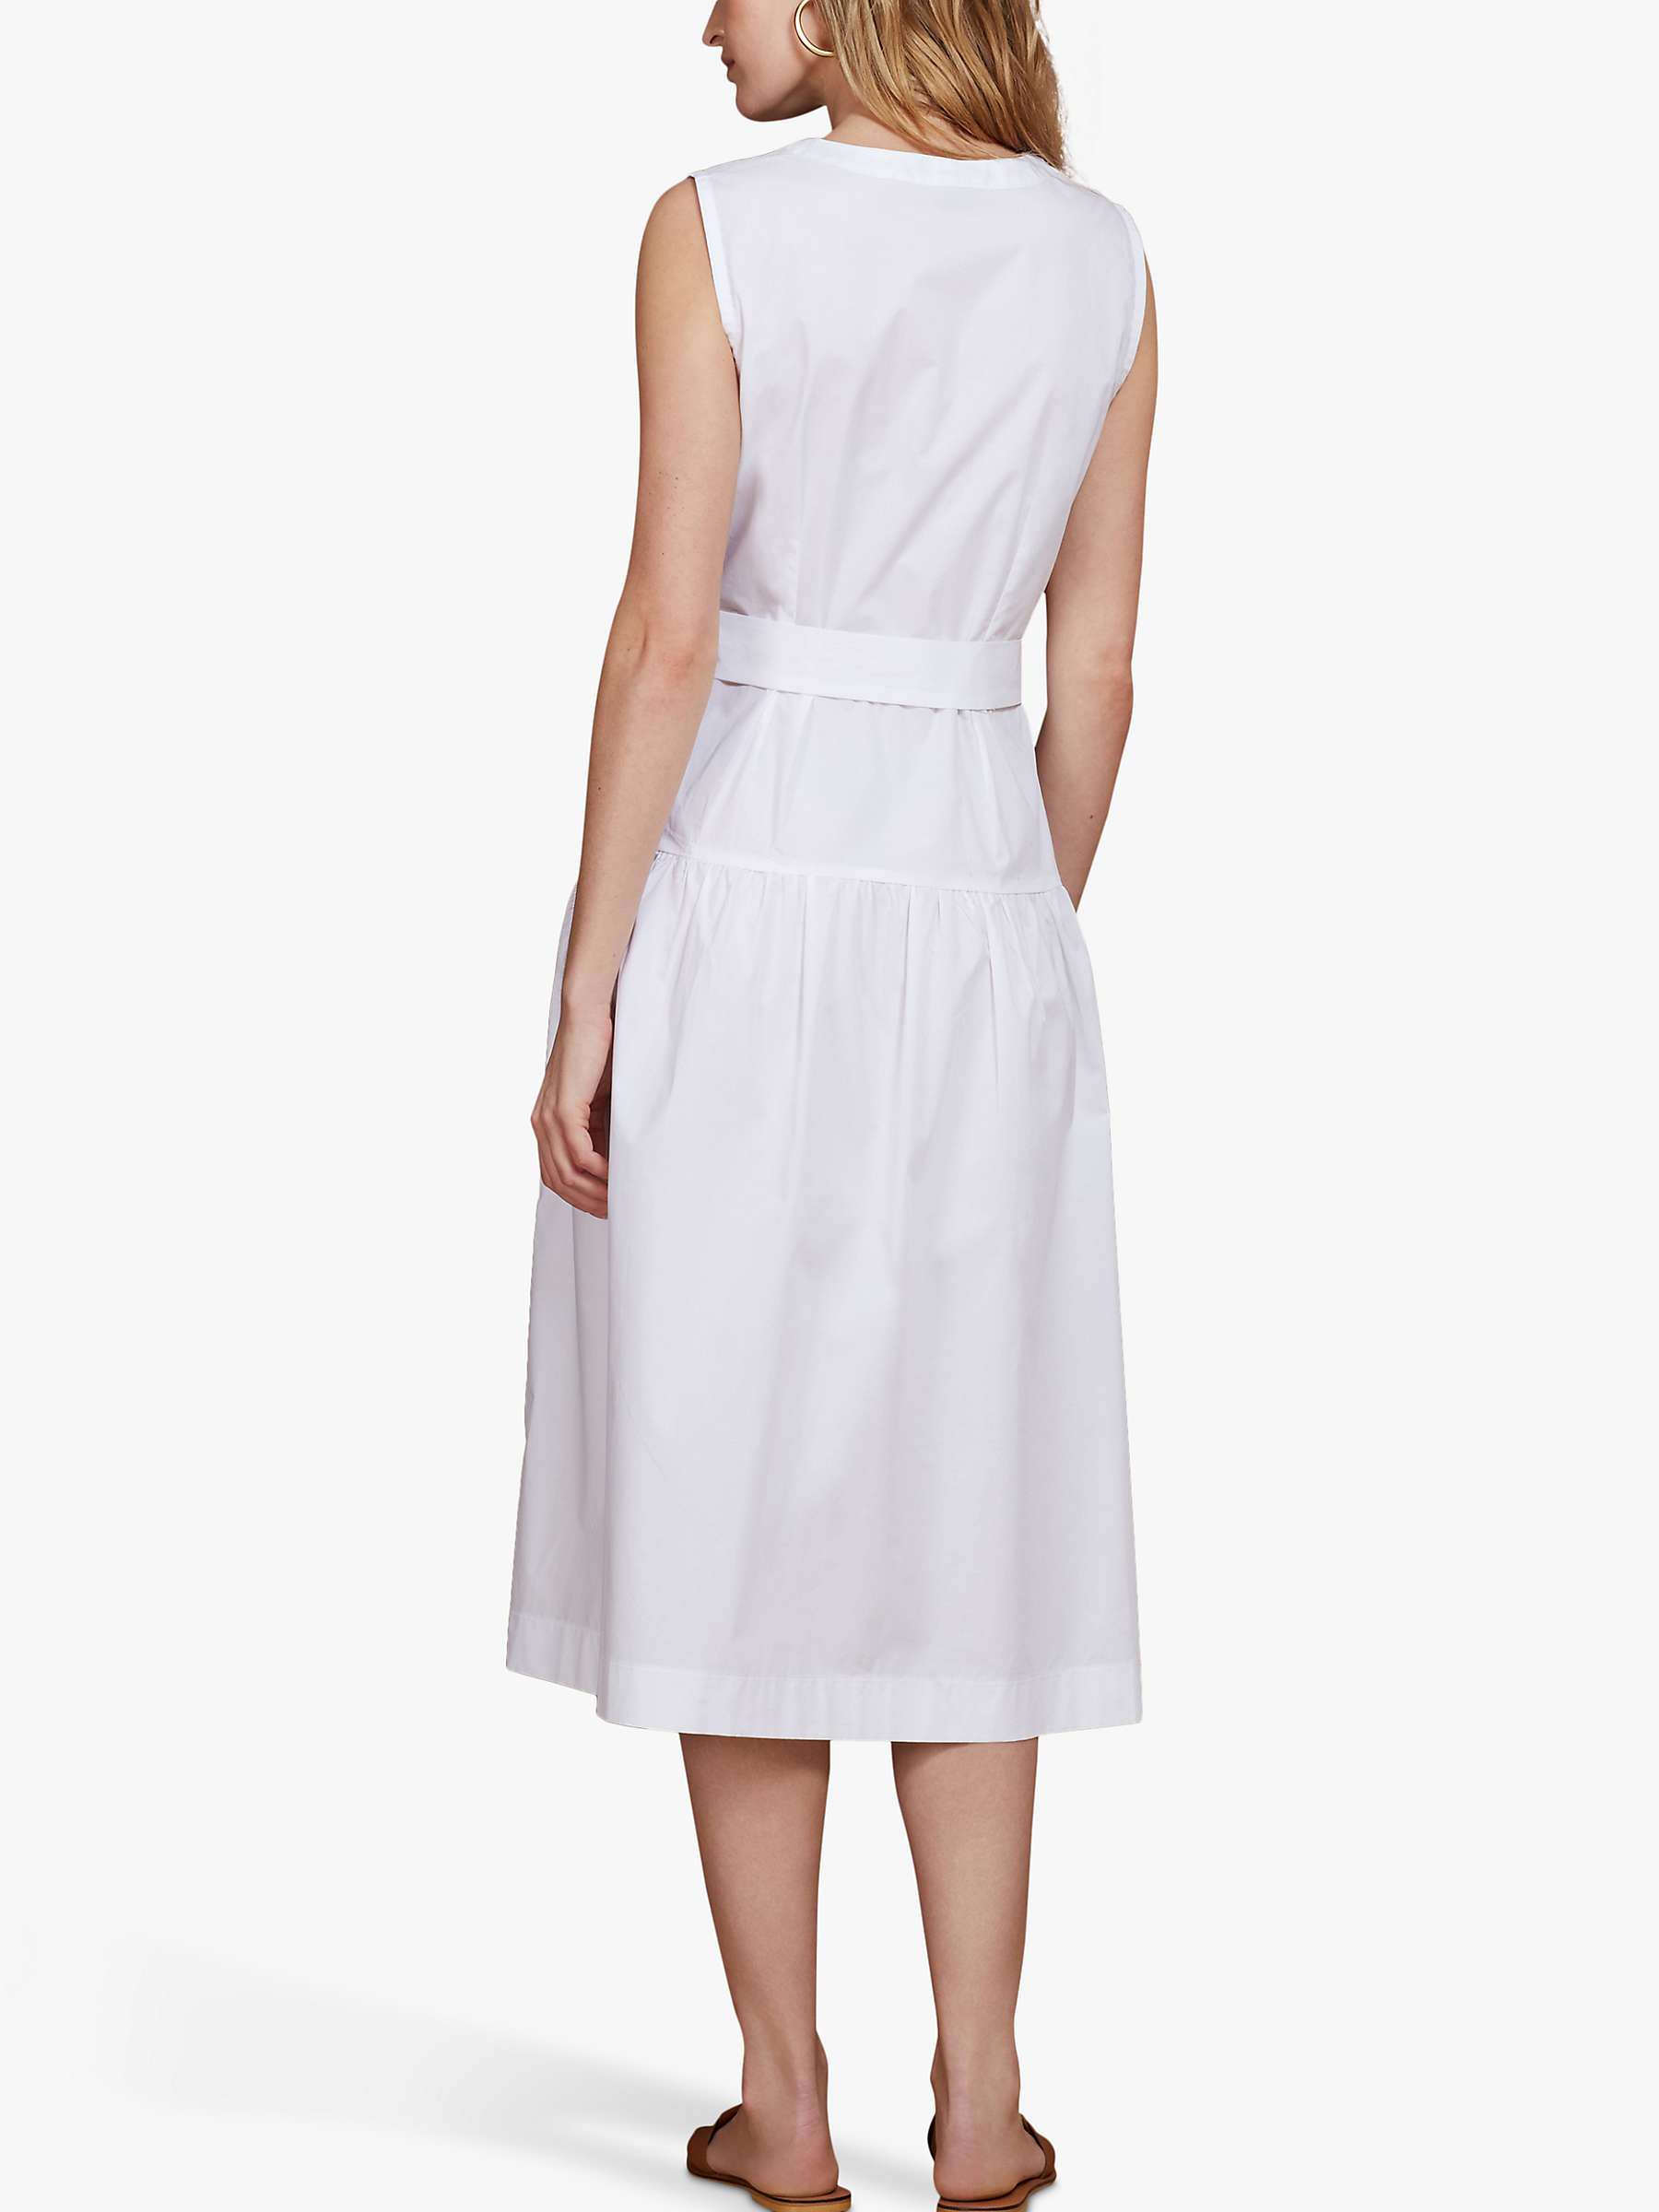 Buy Baukjen Rosetta Sleeveless Cotton Dress, White Online at johnlewis.com